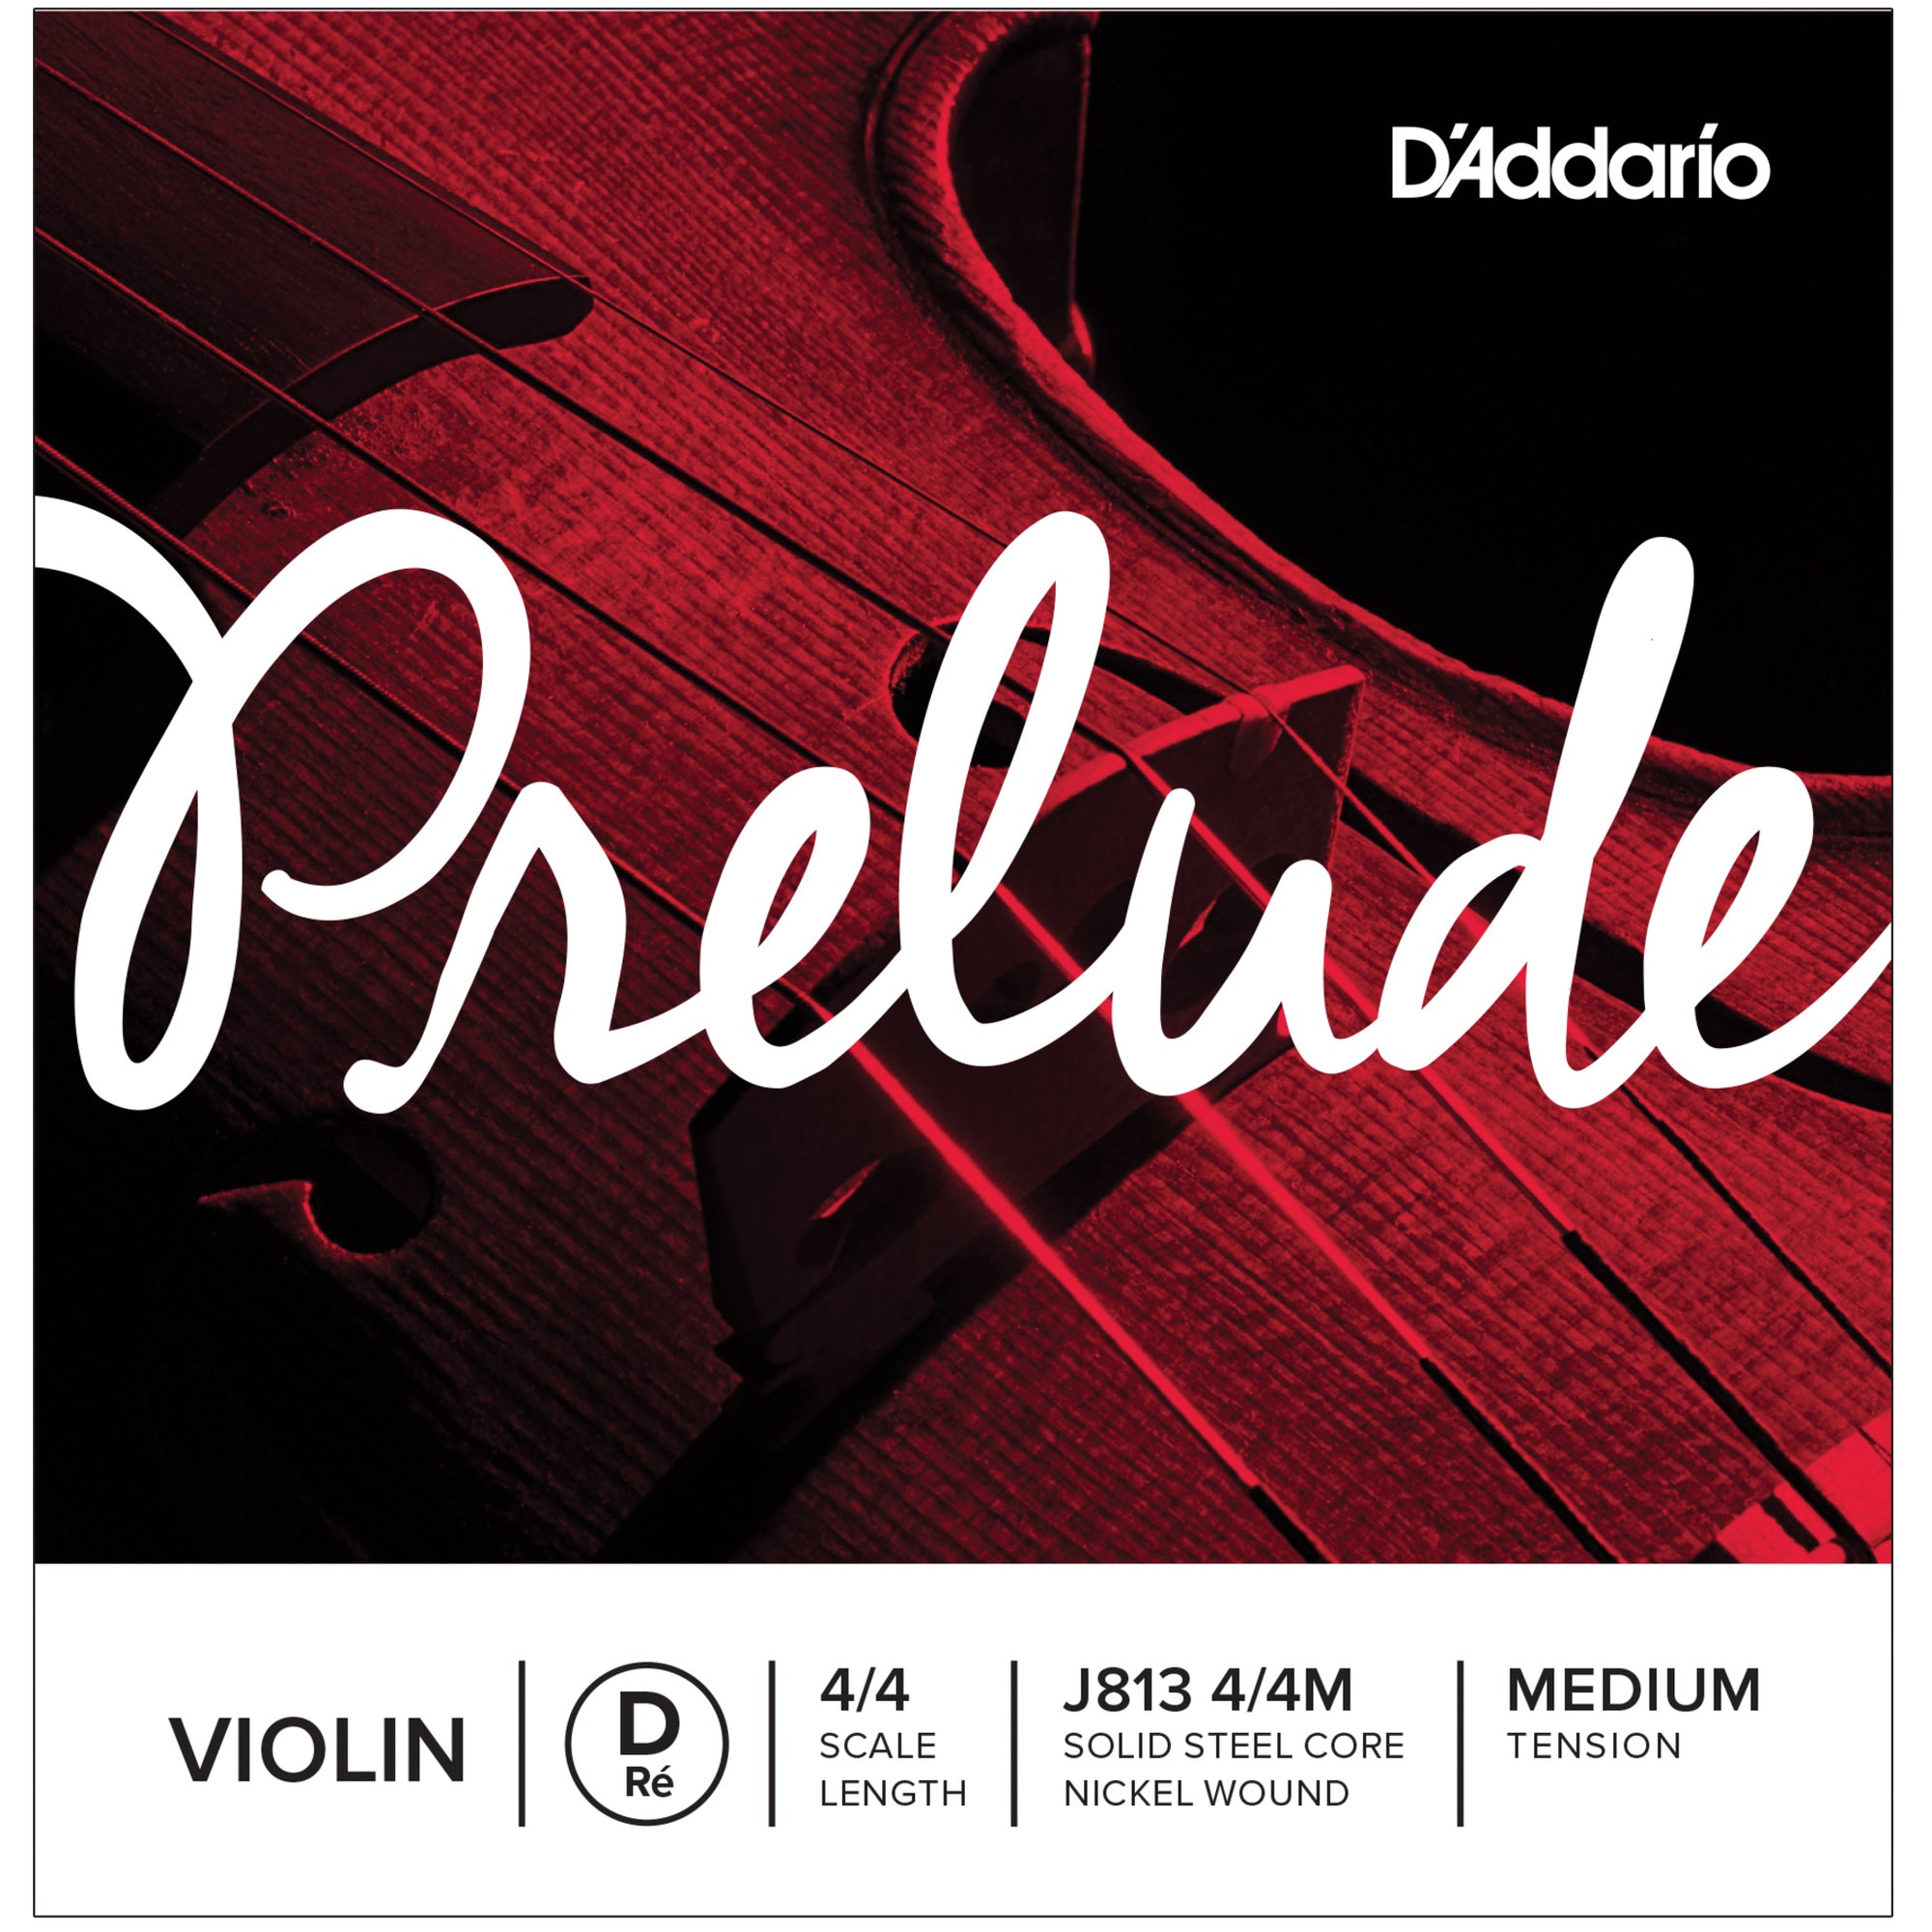 D'Addario J813 4/4M Prelude 4/4 Full D Violin Single String Medium J813